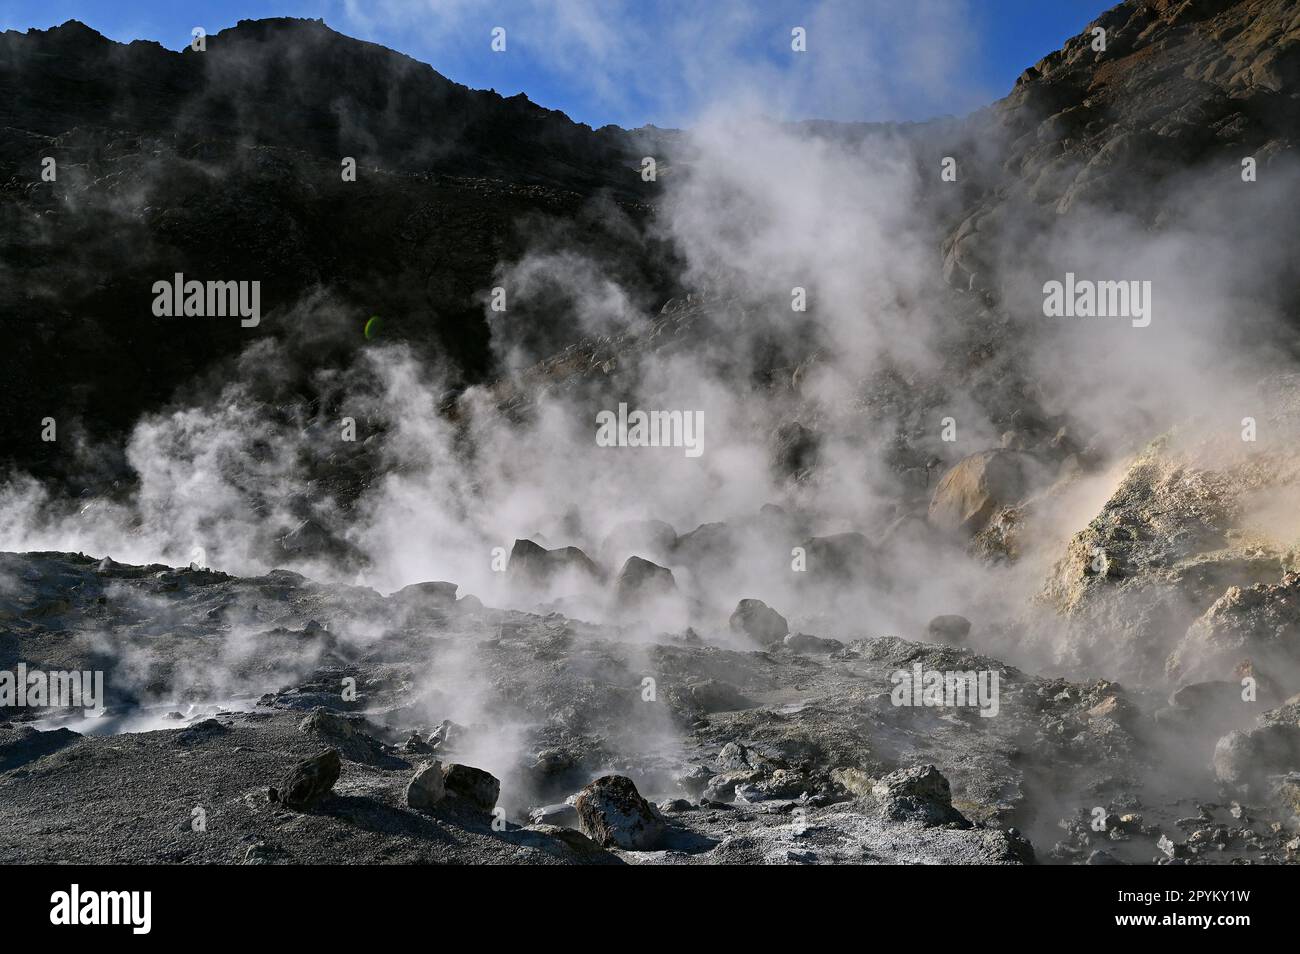 Seltun, sorgenti geotermiche sulla penisola di Reykjanes nel sud-ovest dell'Islanda. Foto Stock